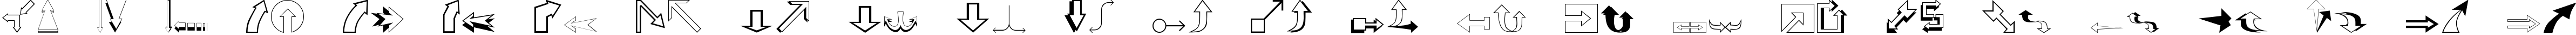 Пример написания английского алфавита шрифтом Arrows2